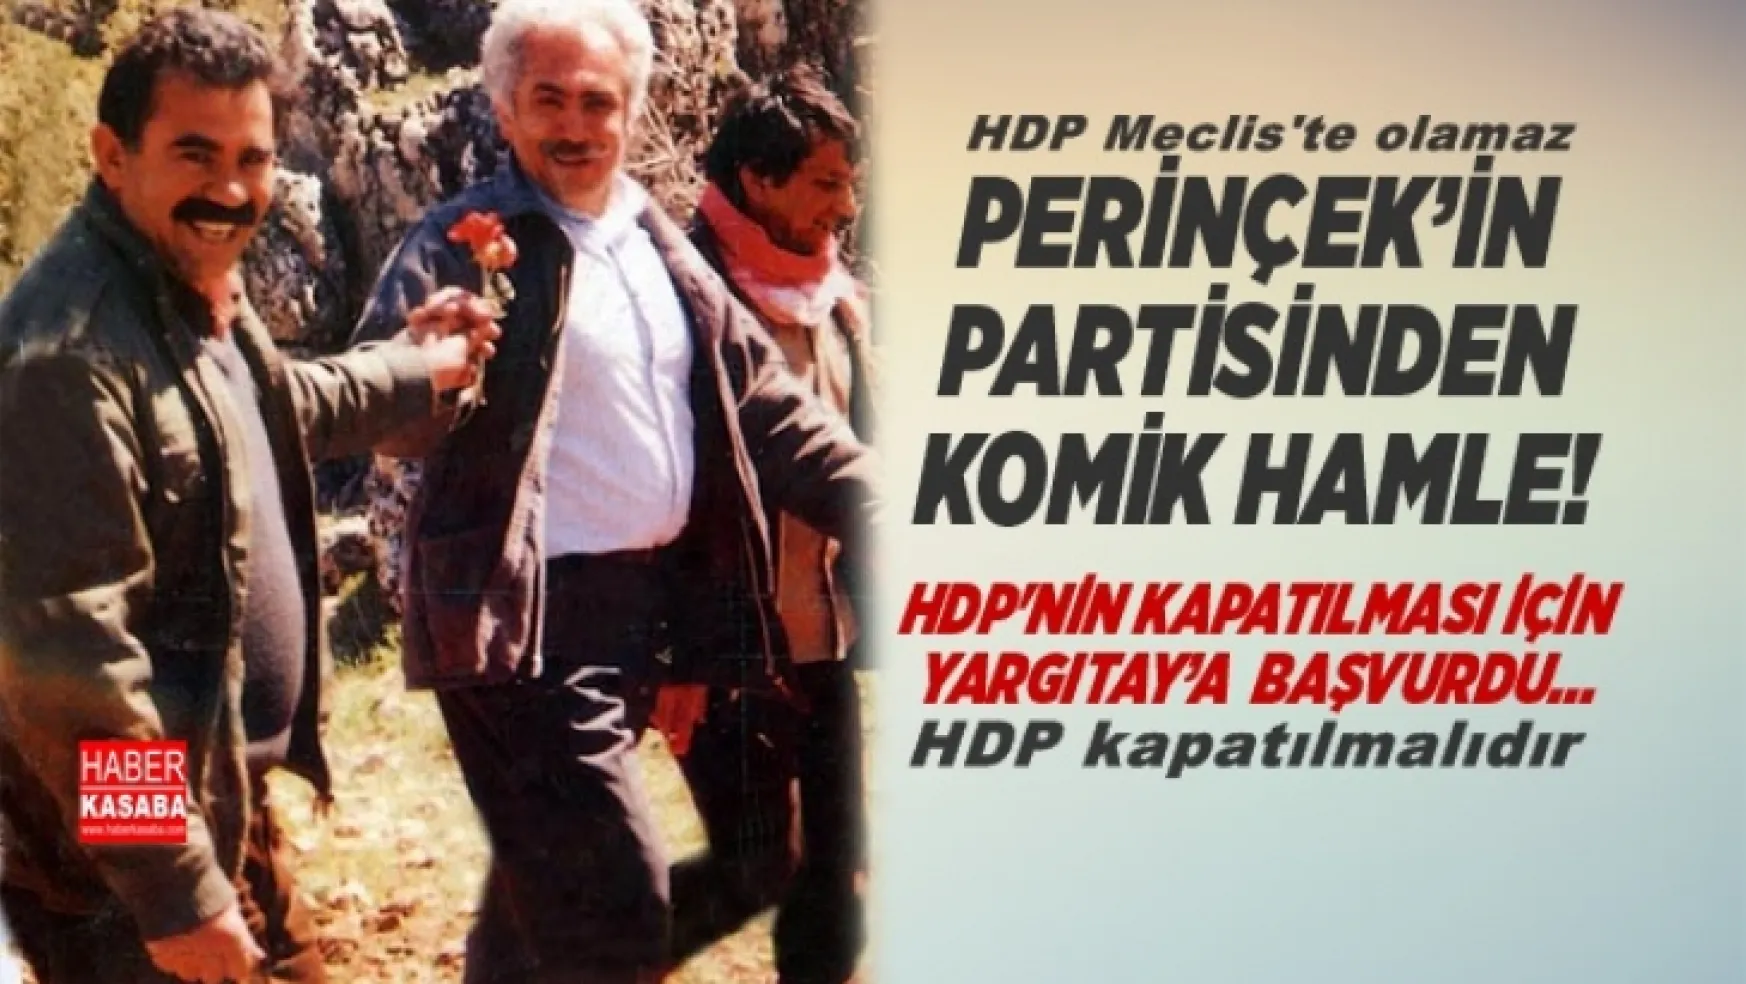 HDP'nin kapatılması için Perinçek'in partisinden komik hamle! Vatan Partisi Yargıtay'a Dilekçe Verdi